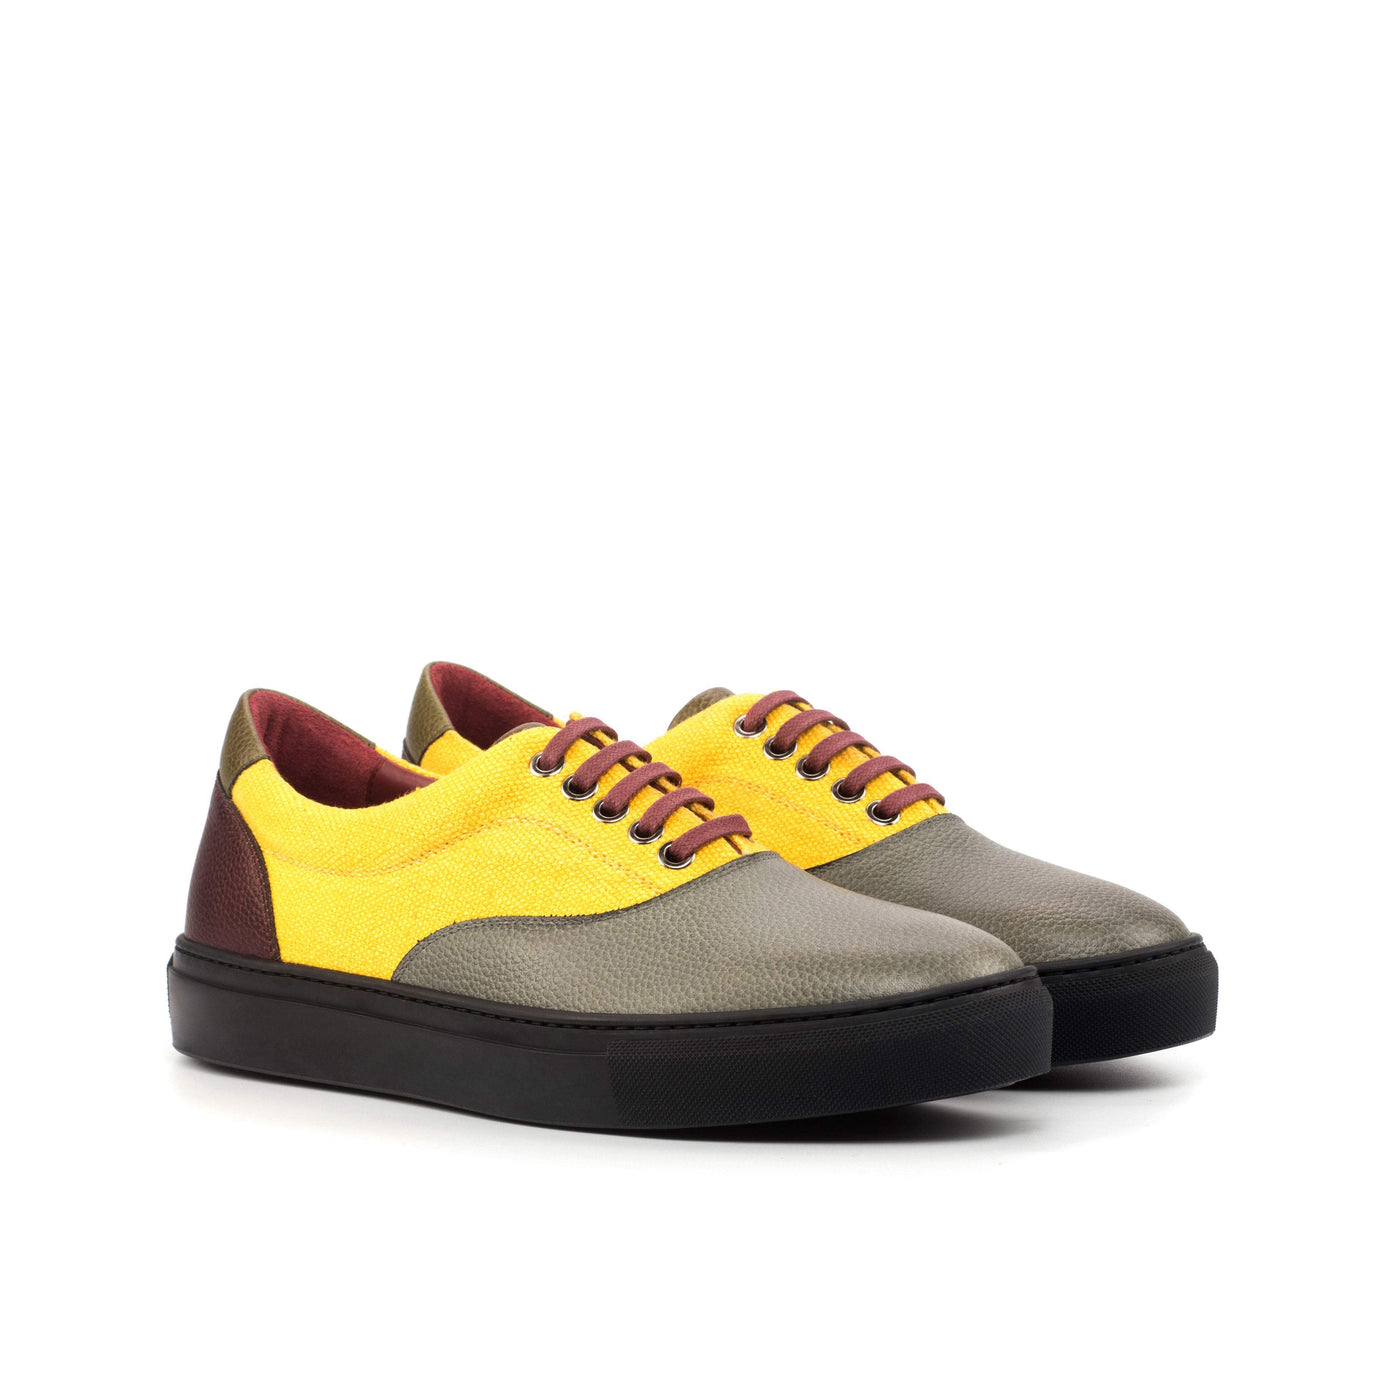 Men's Top Sider Sneakers Yellow 4570 4- MERRIMIUM